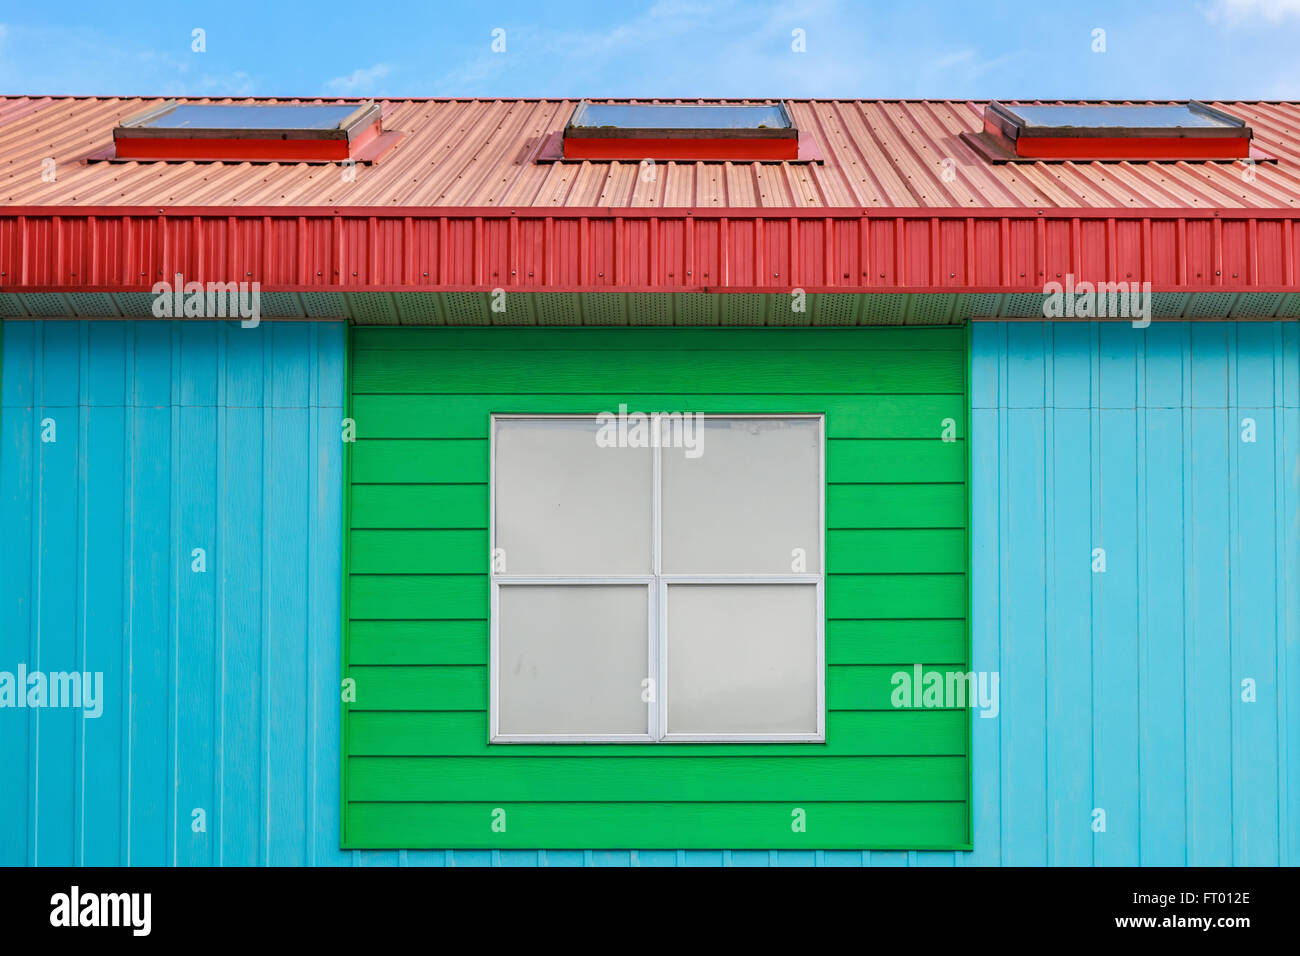 Bunte Wand Wohnhauses gegen blauen Himmel gemalt. Stockfoto